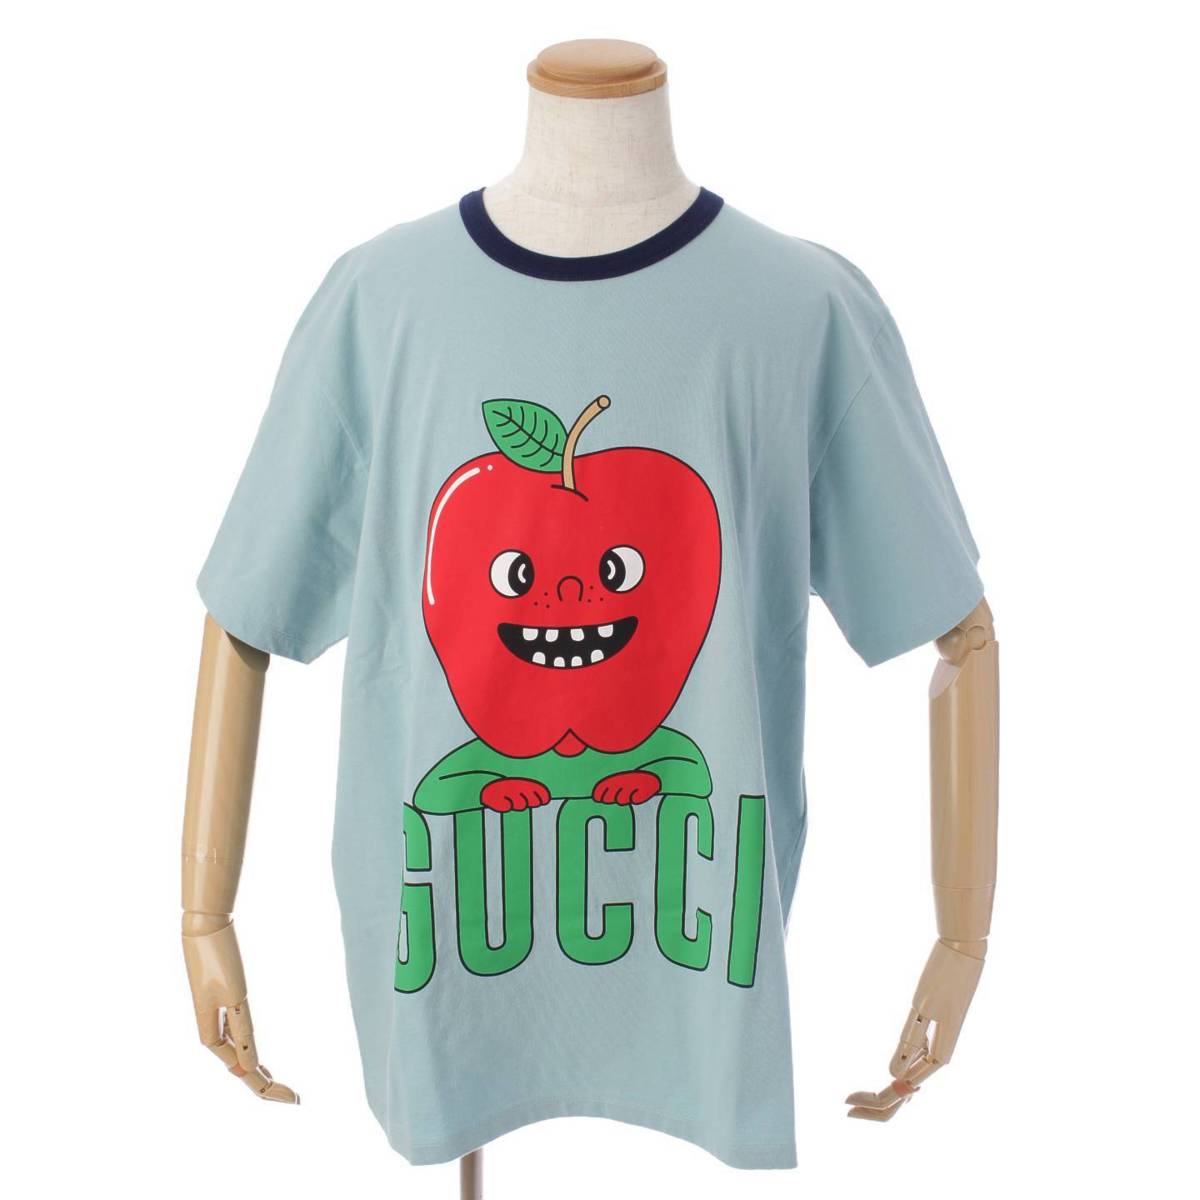 グッチ(Gucci) アップルプリント オーバーサイズ Tシャツ トップス